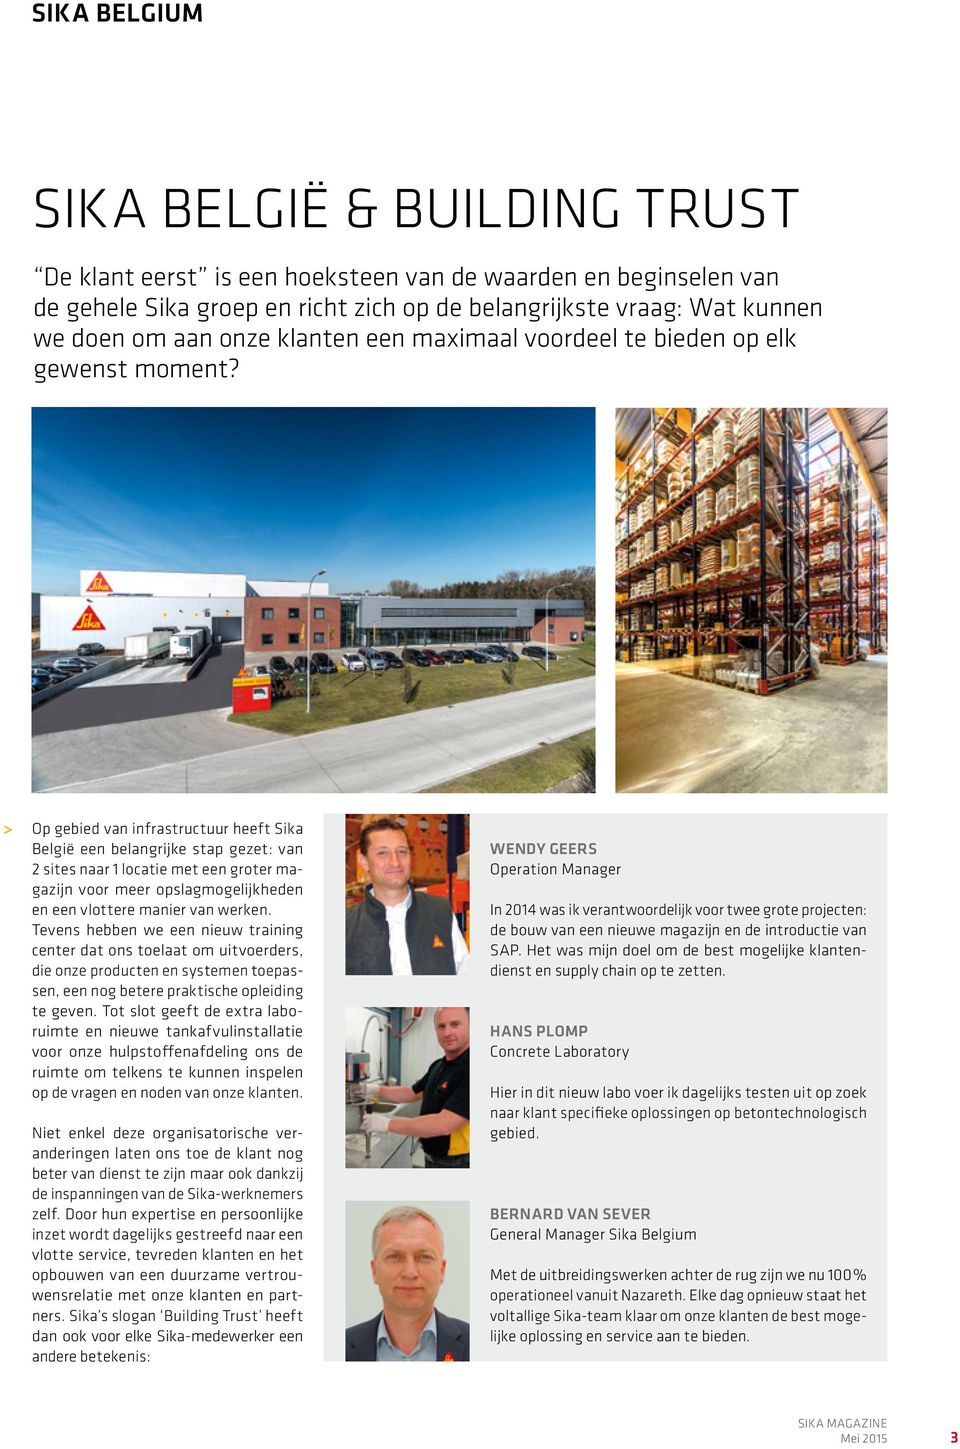 Op gebied van infrastructuur heeft Sika België een belangrijke stap gezet: van 2 sites naar 1 locatie met een groter magazijn voor meer opslagmogelijkheden en een vlottere manier van werken.